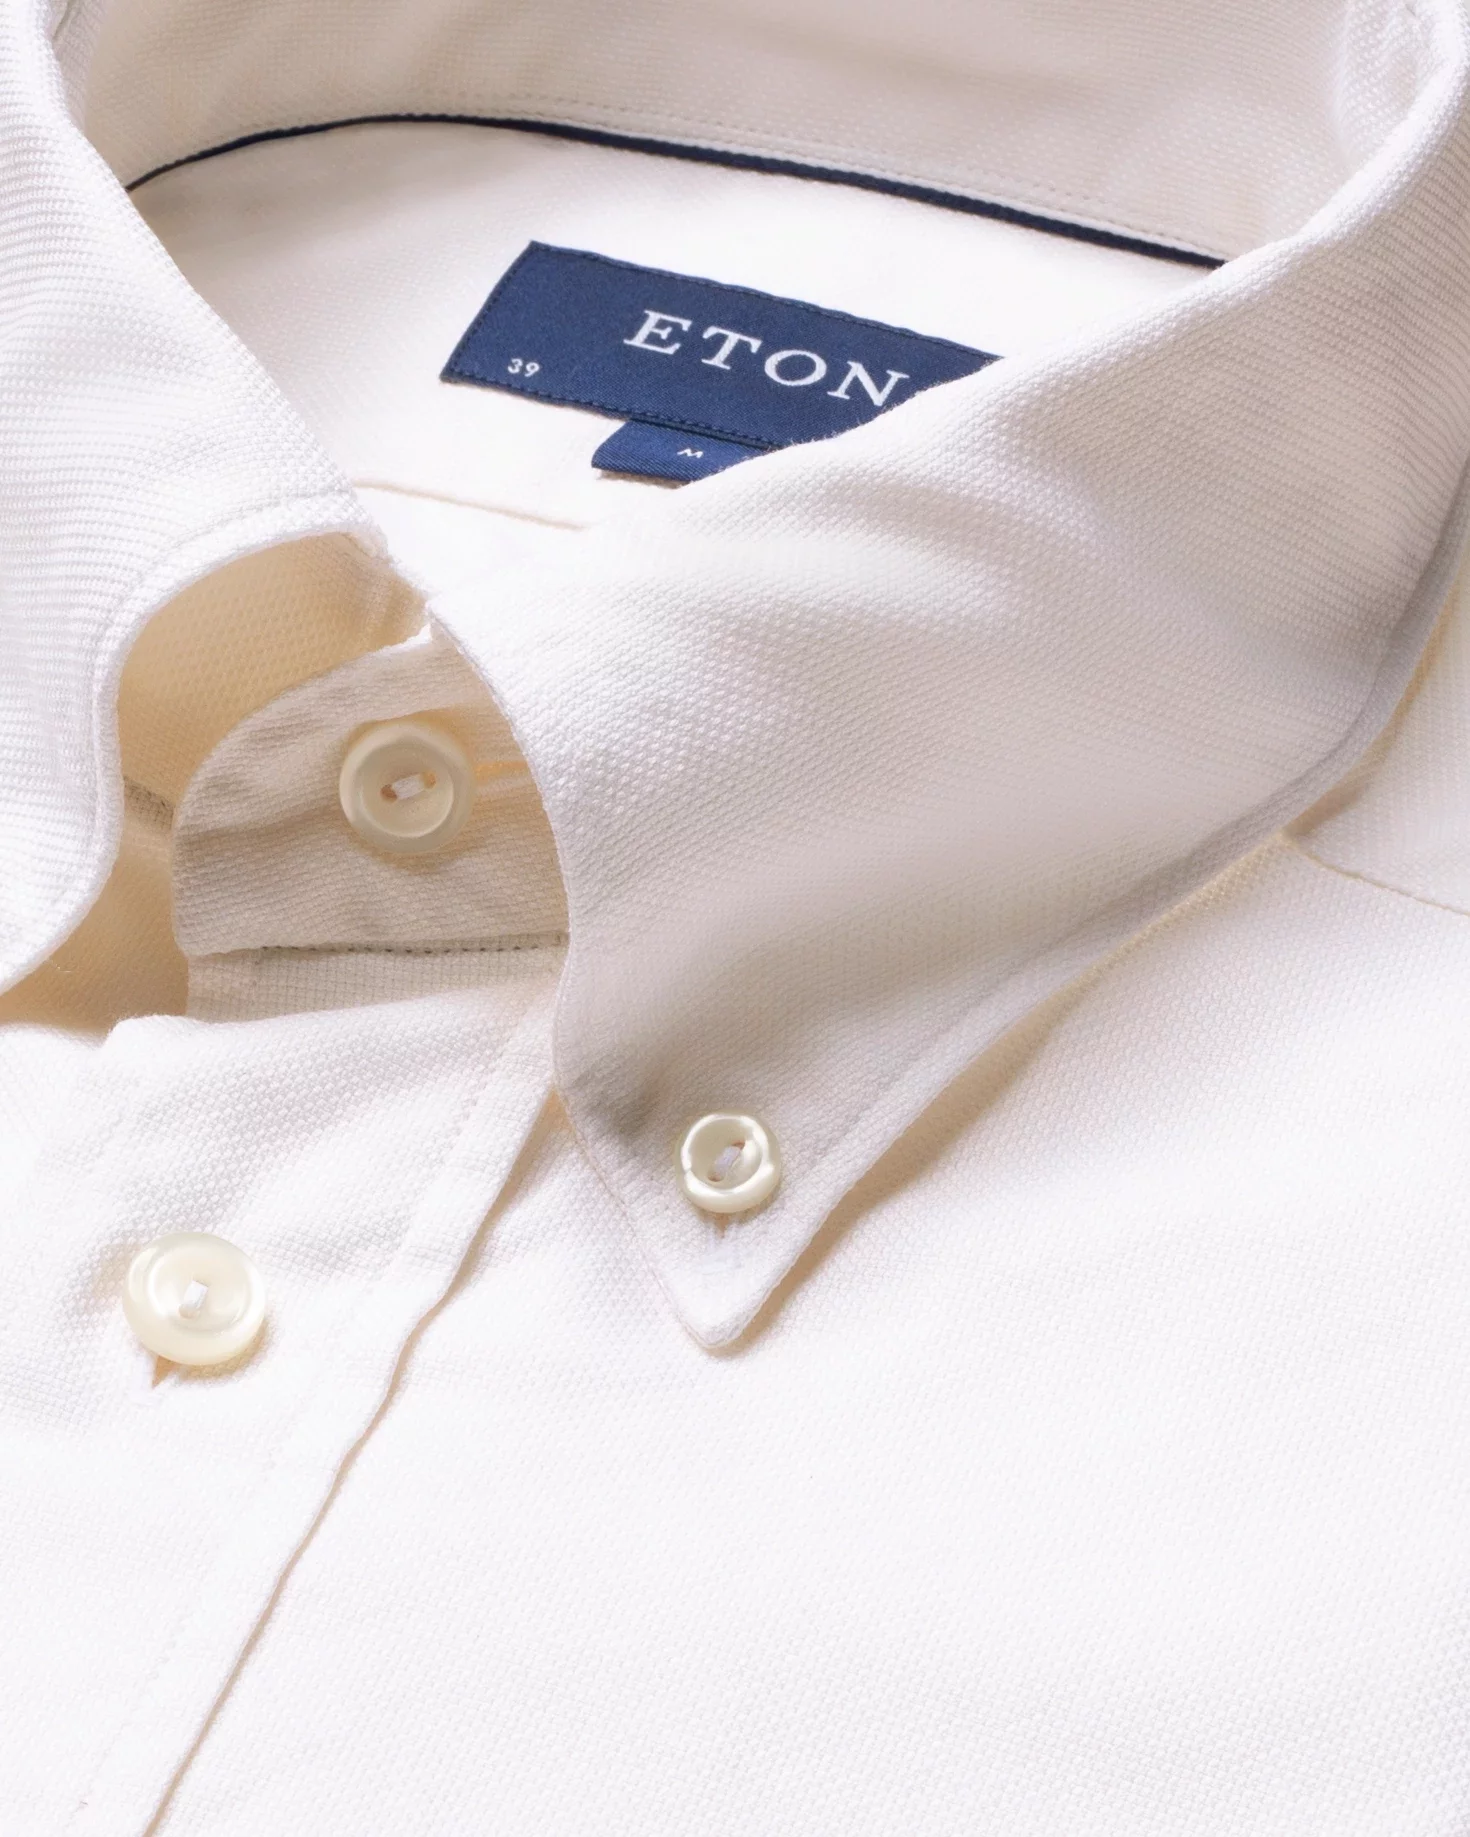 Eton - white oxford shirt